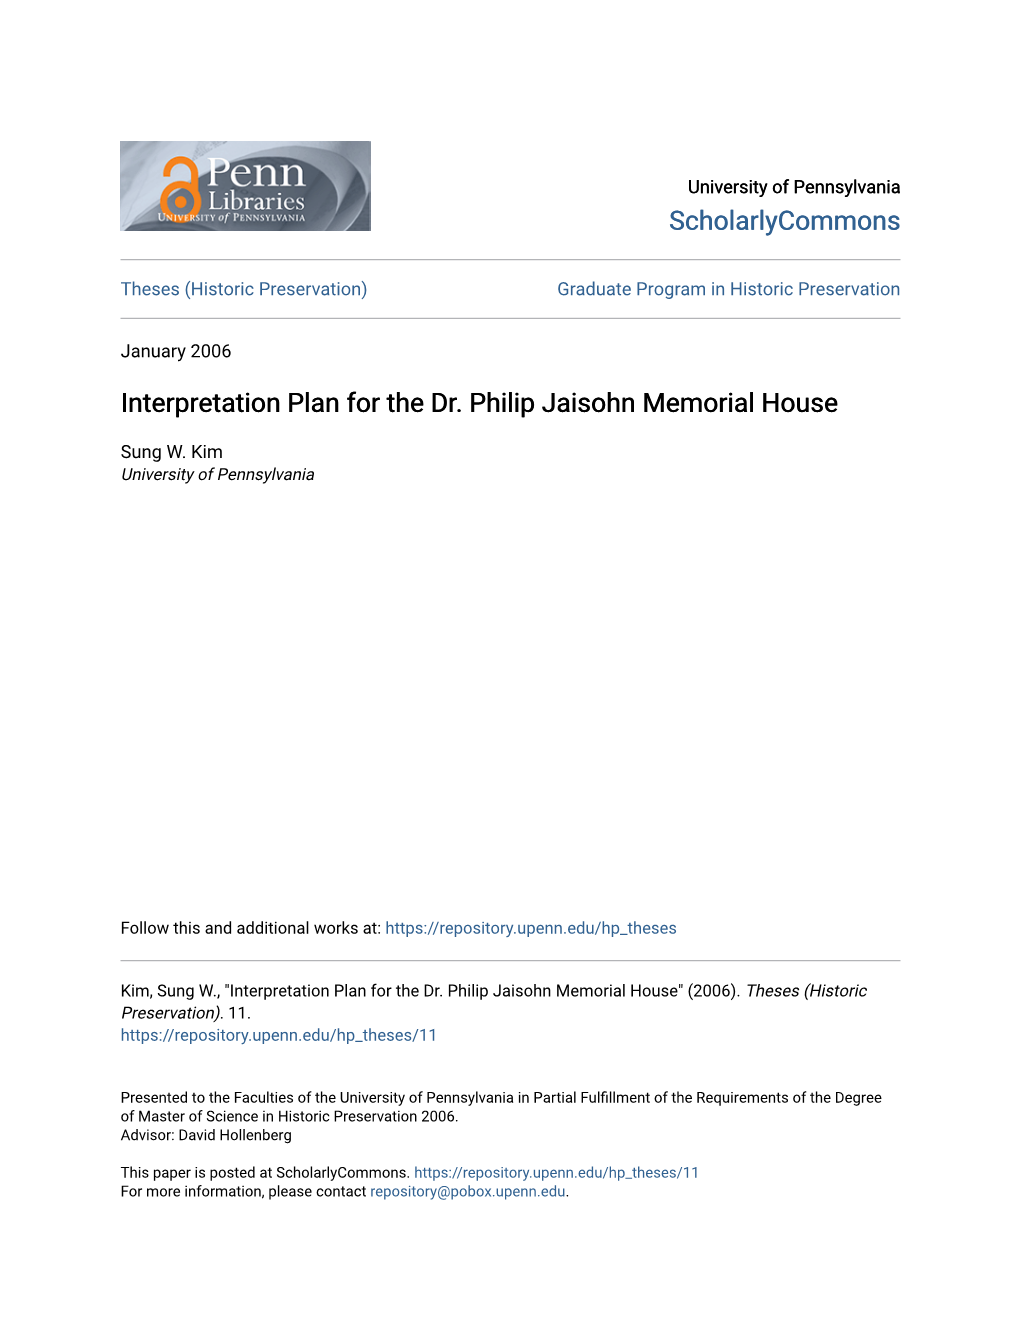 Interpretation Plan for the Dr. Philip Jaisohn Memorial House